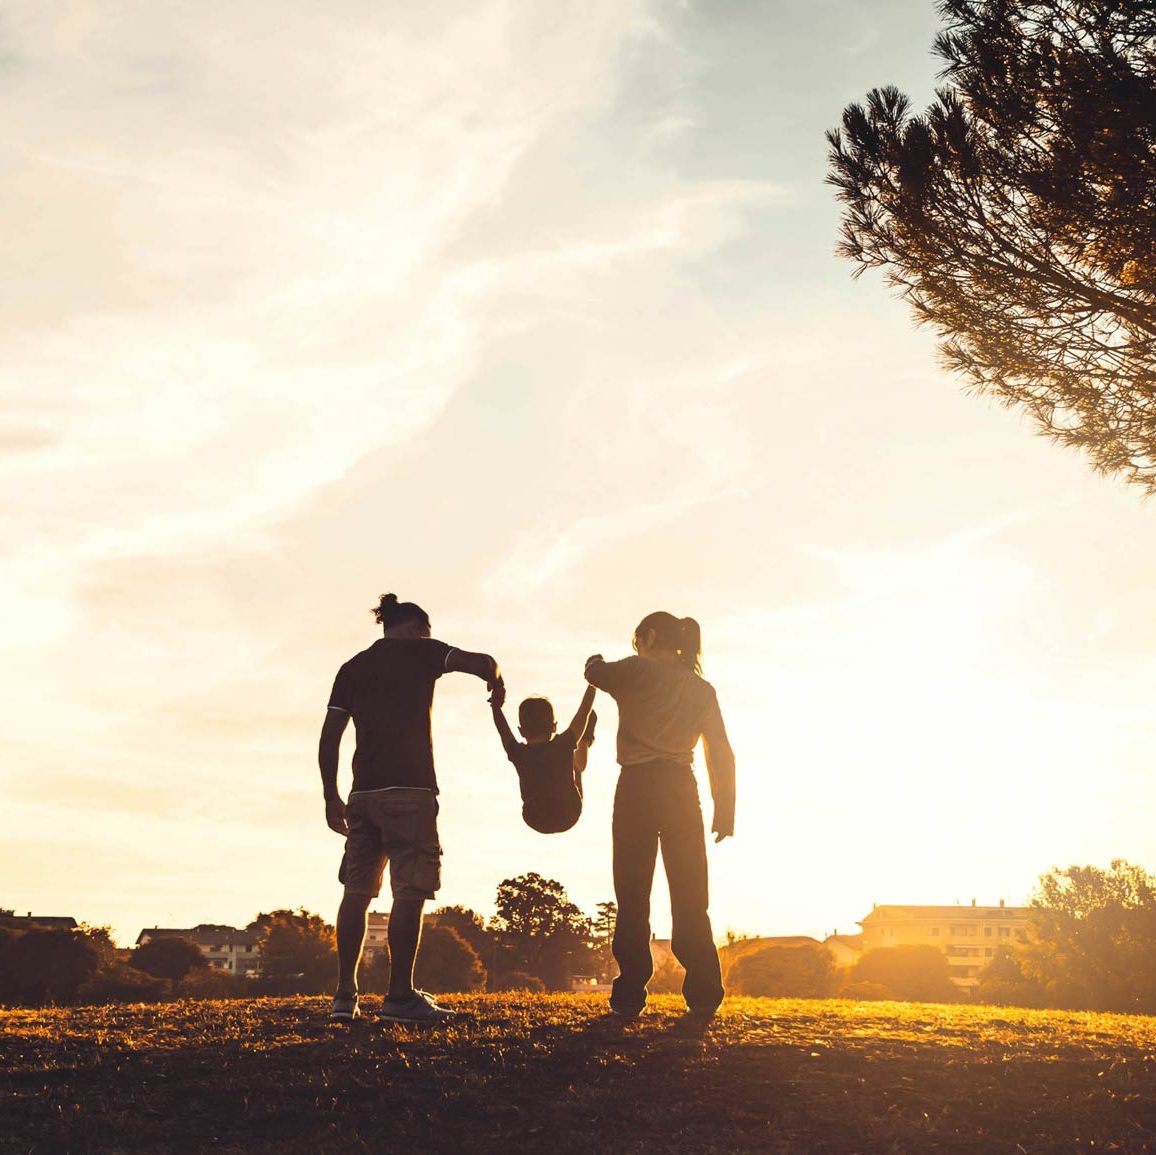 Deux personnes balancent leur enfant de manière ludique dans un beau parc avec un grand arbre et de l’herbe courte, au coucher du soleil.